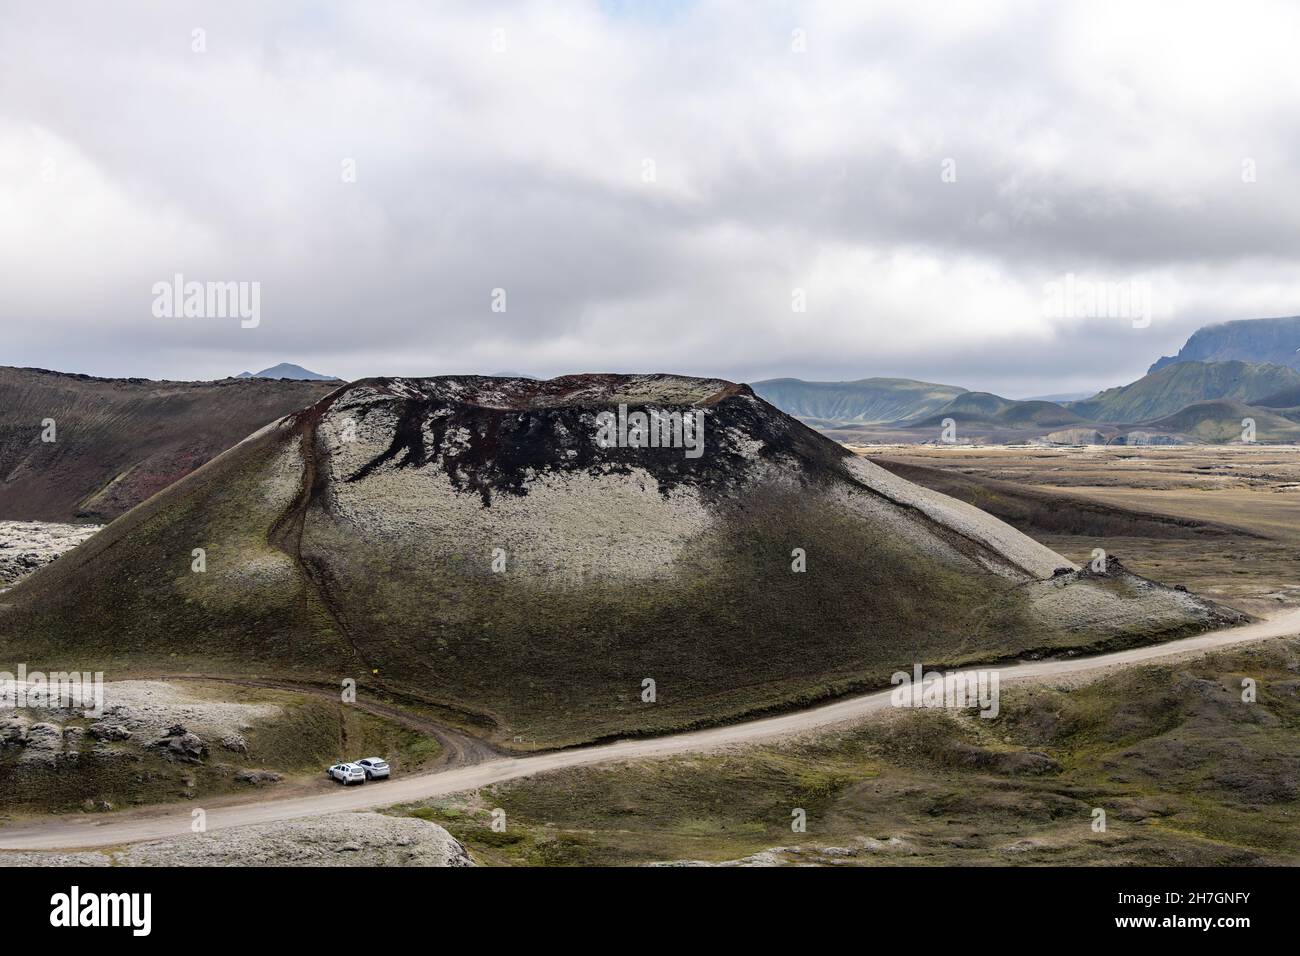 Alto angolo di vista di un vulcano dormiente sull'altopiano vulcanico vicino al vulcano Katla in Islanda con montagne sullo sfondo e auto parcheggiate Foto Stock